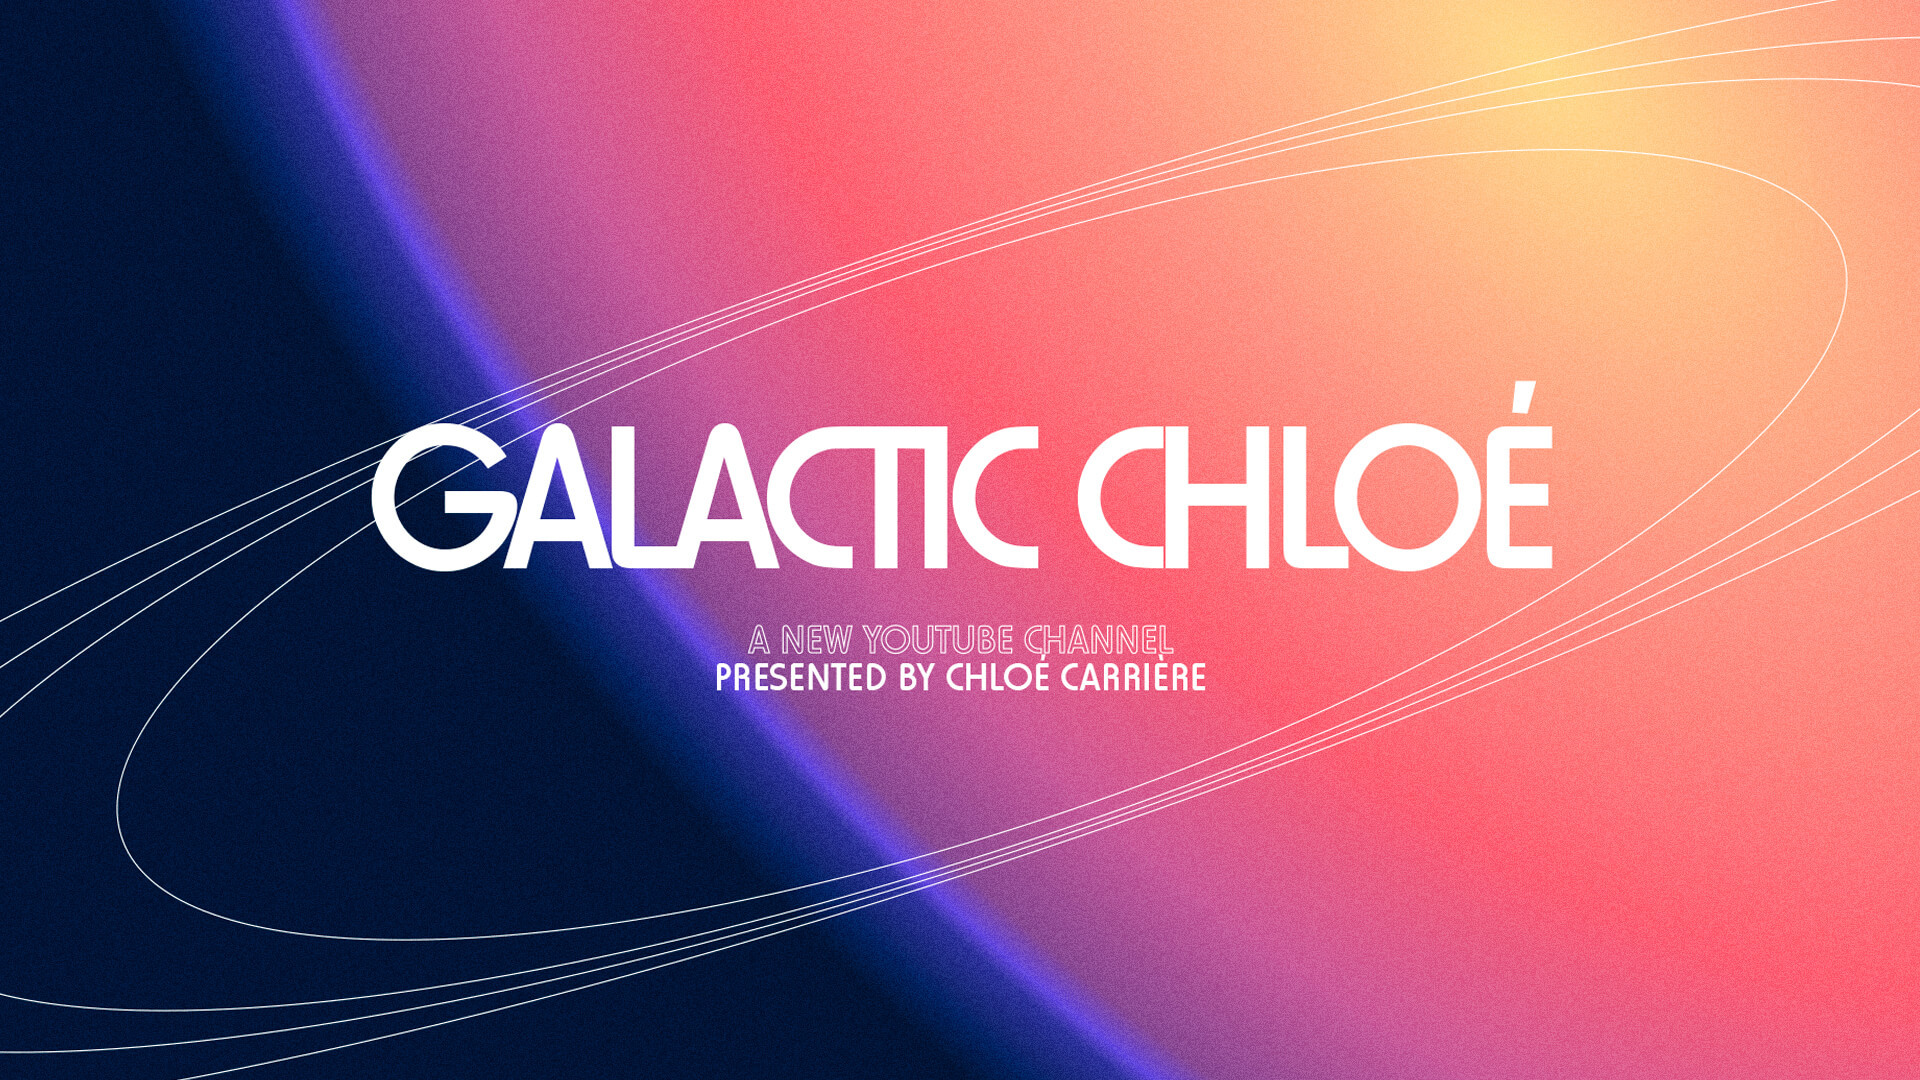 Logotype de la chaine YouTube Galactic Chloe